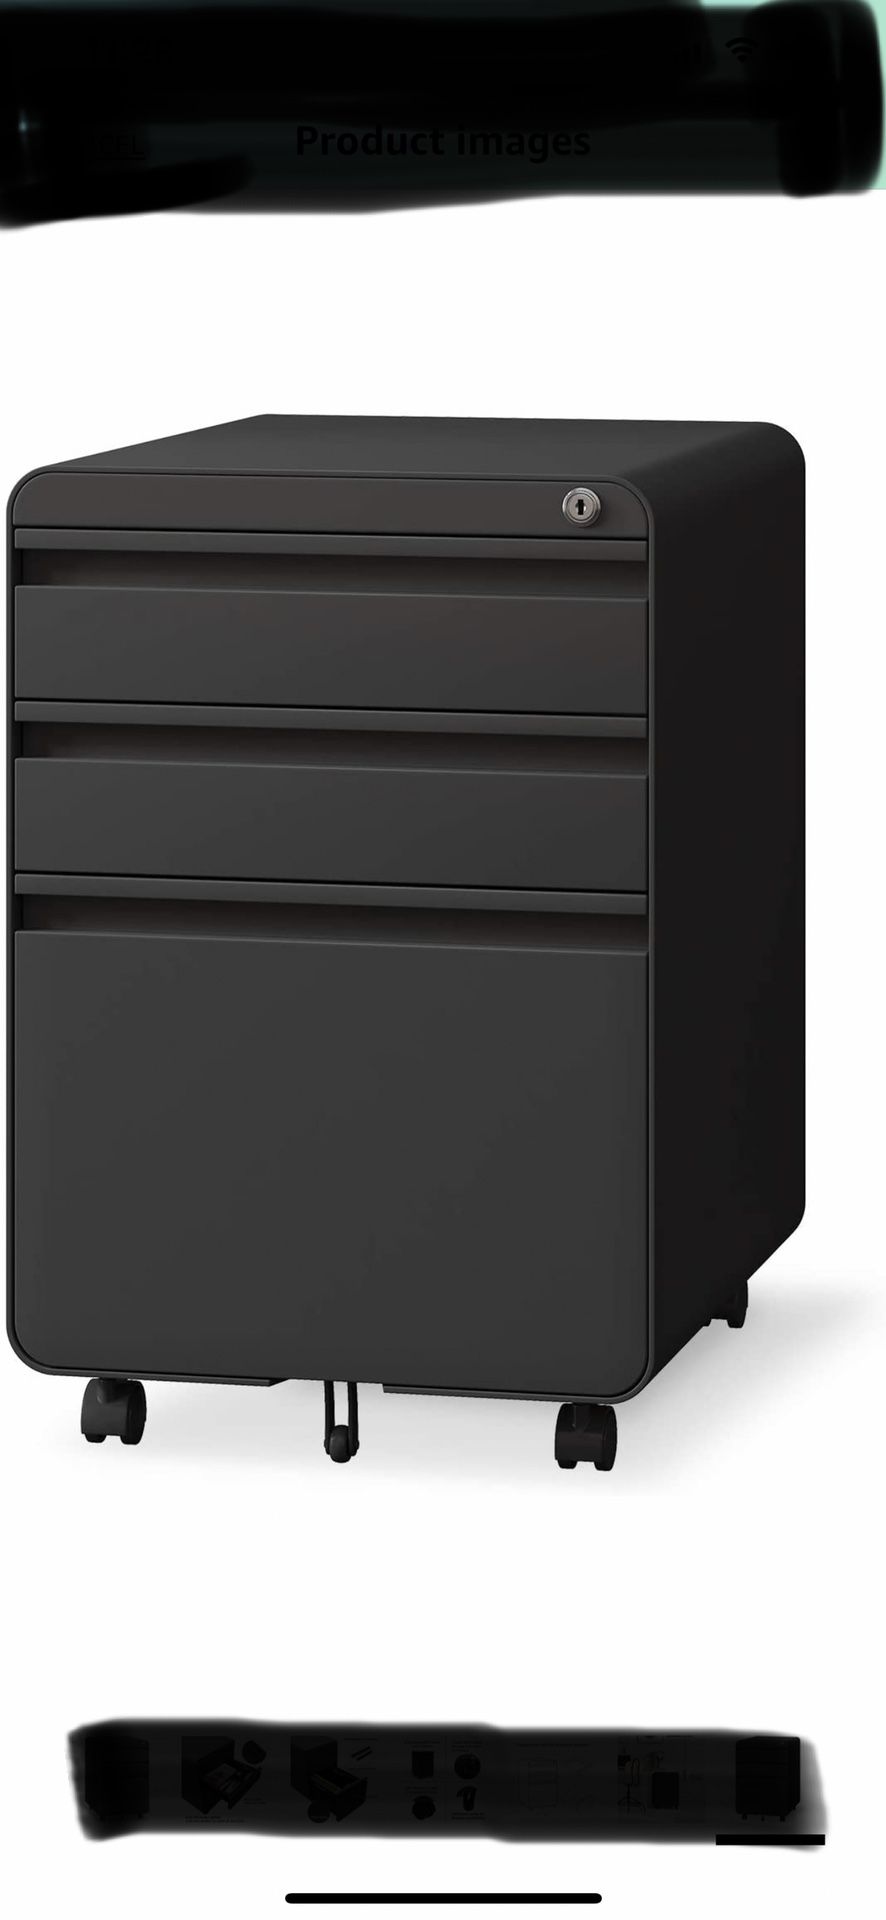 3 Drawer Black File Cabinet With Keys